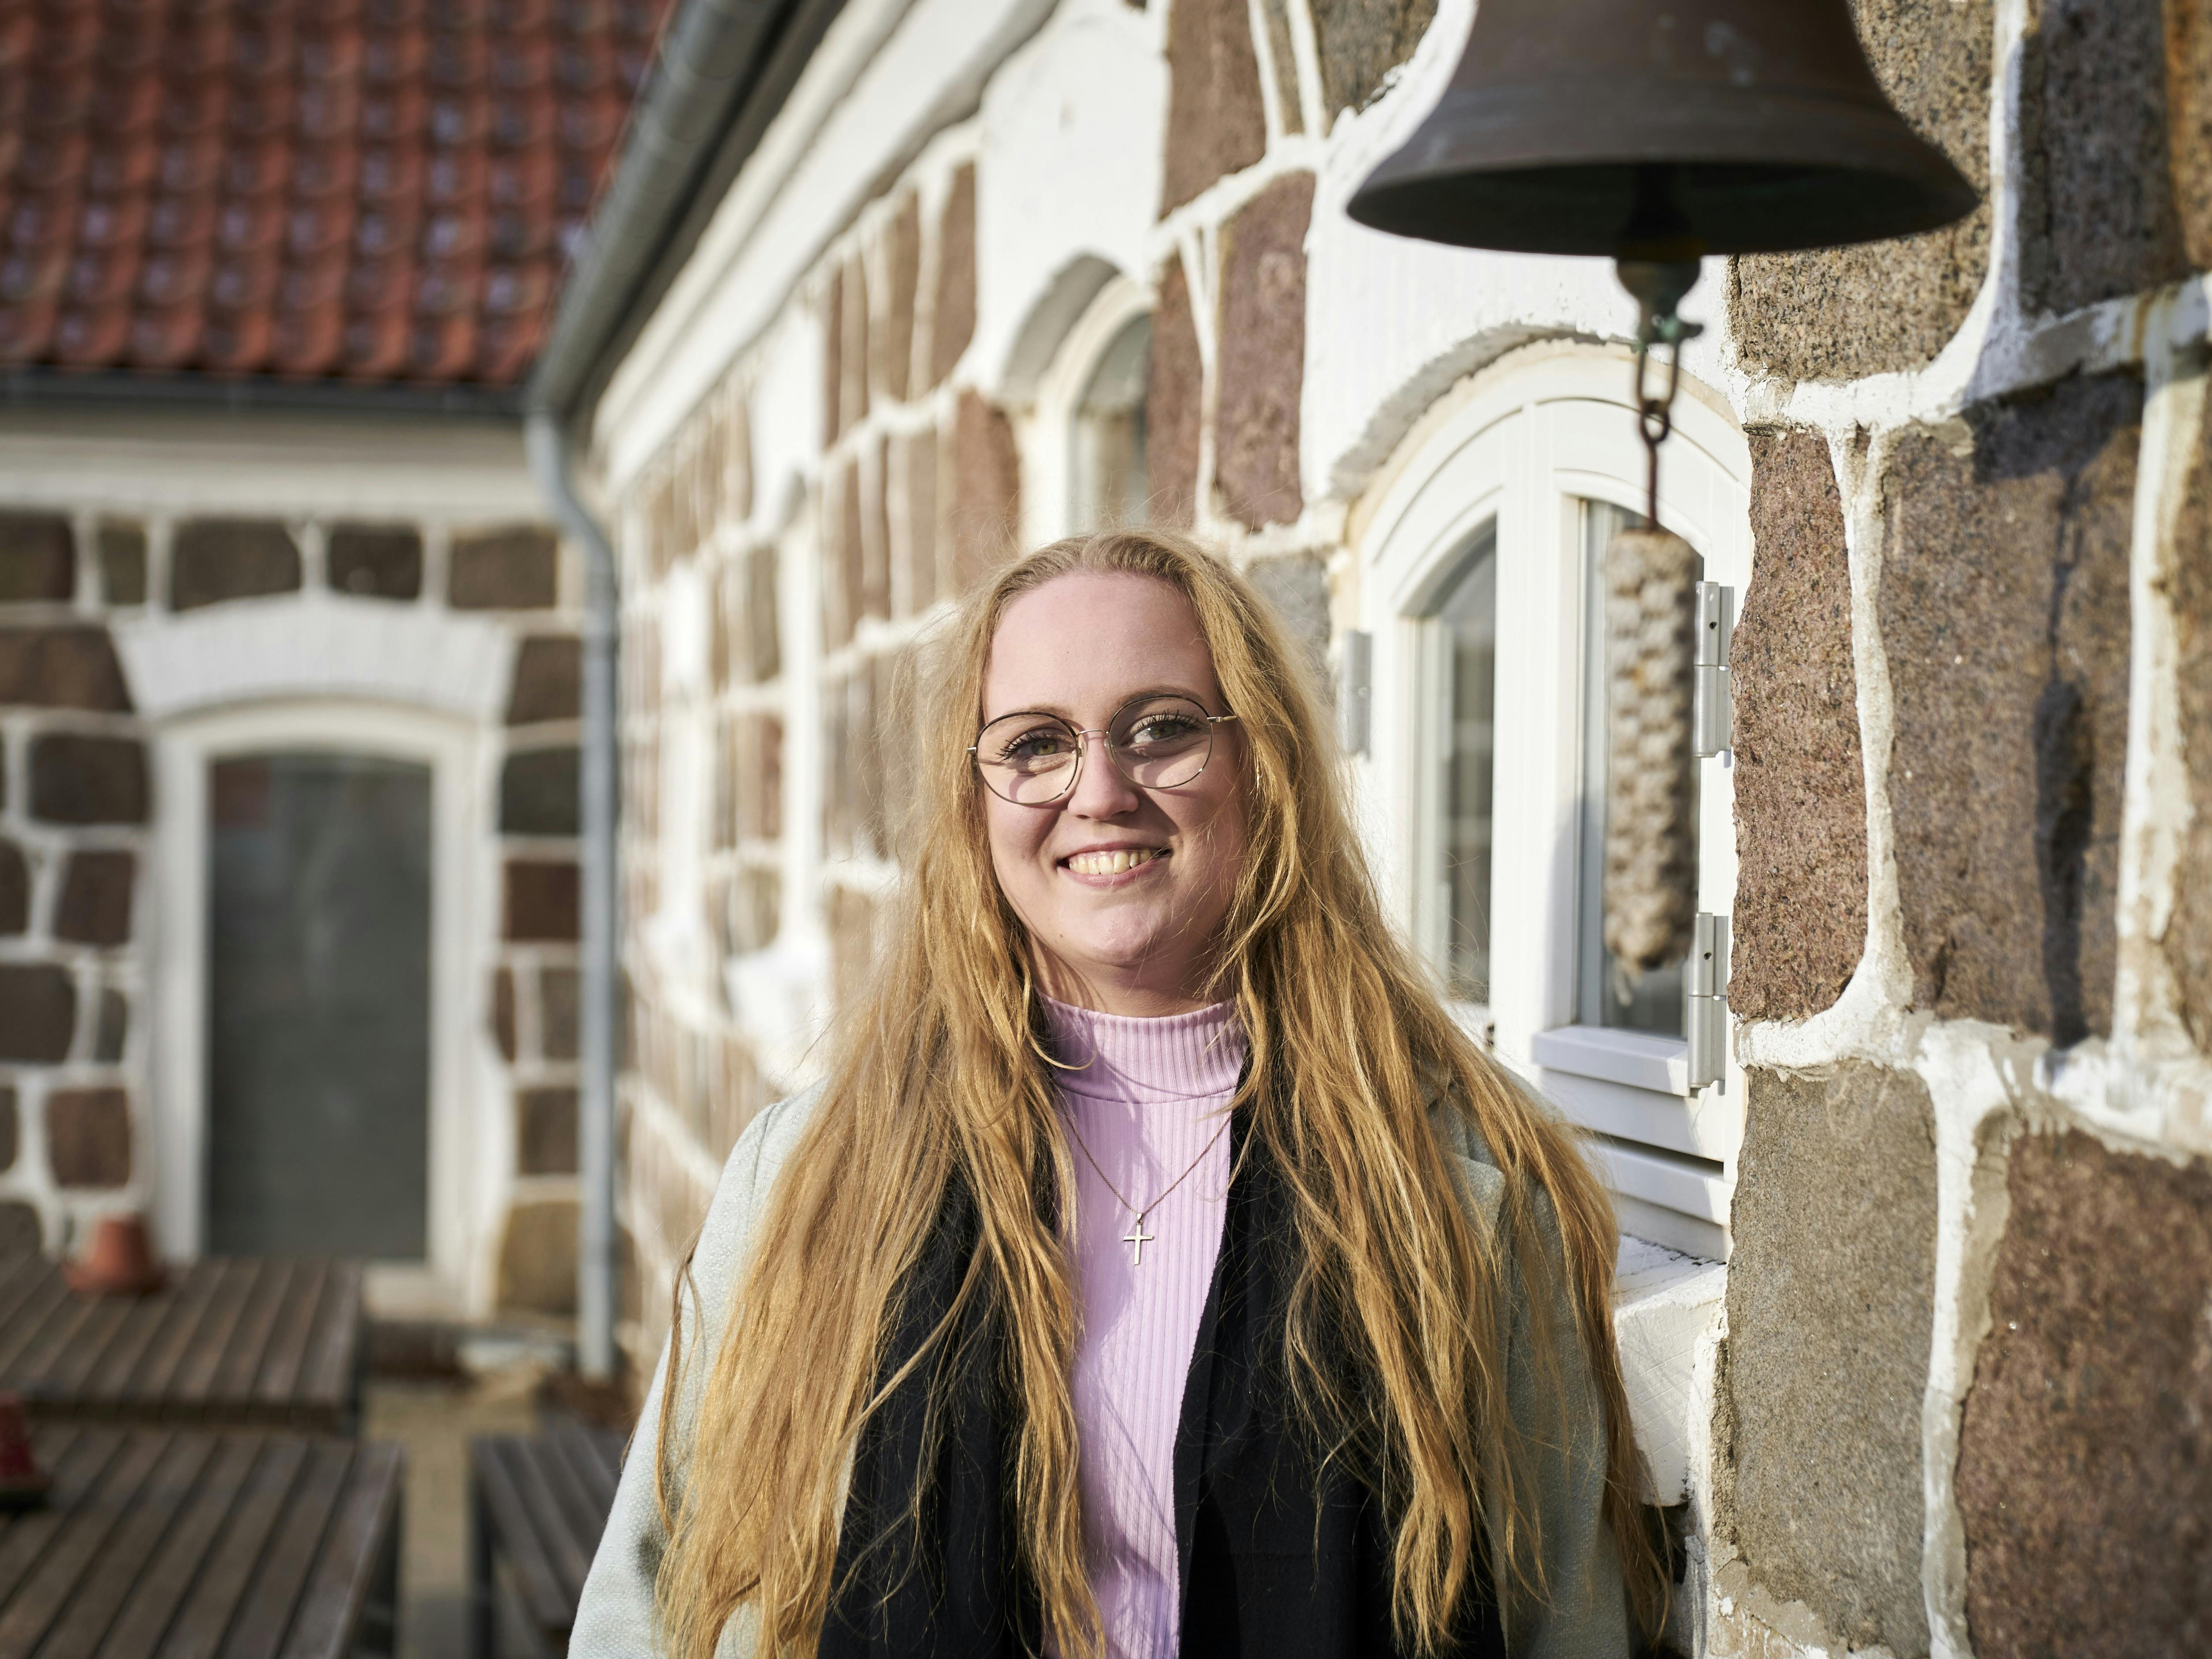 26-årige Sofie Rue opholder sig på Ubberup Højskole. 